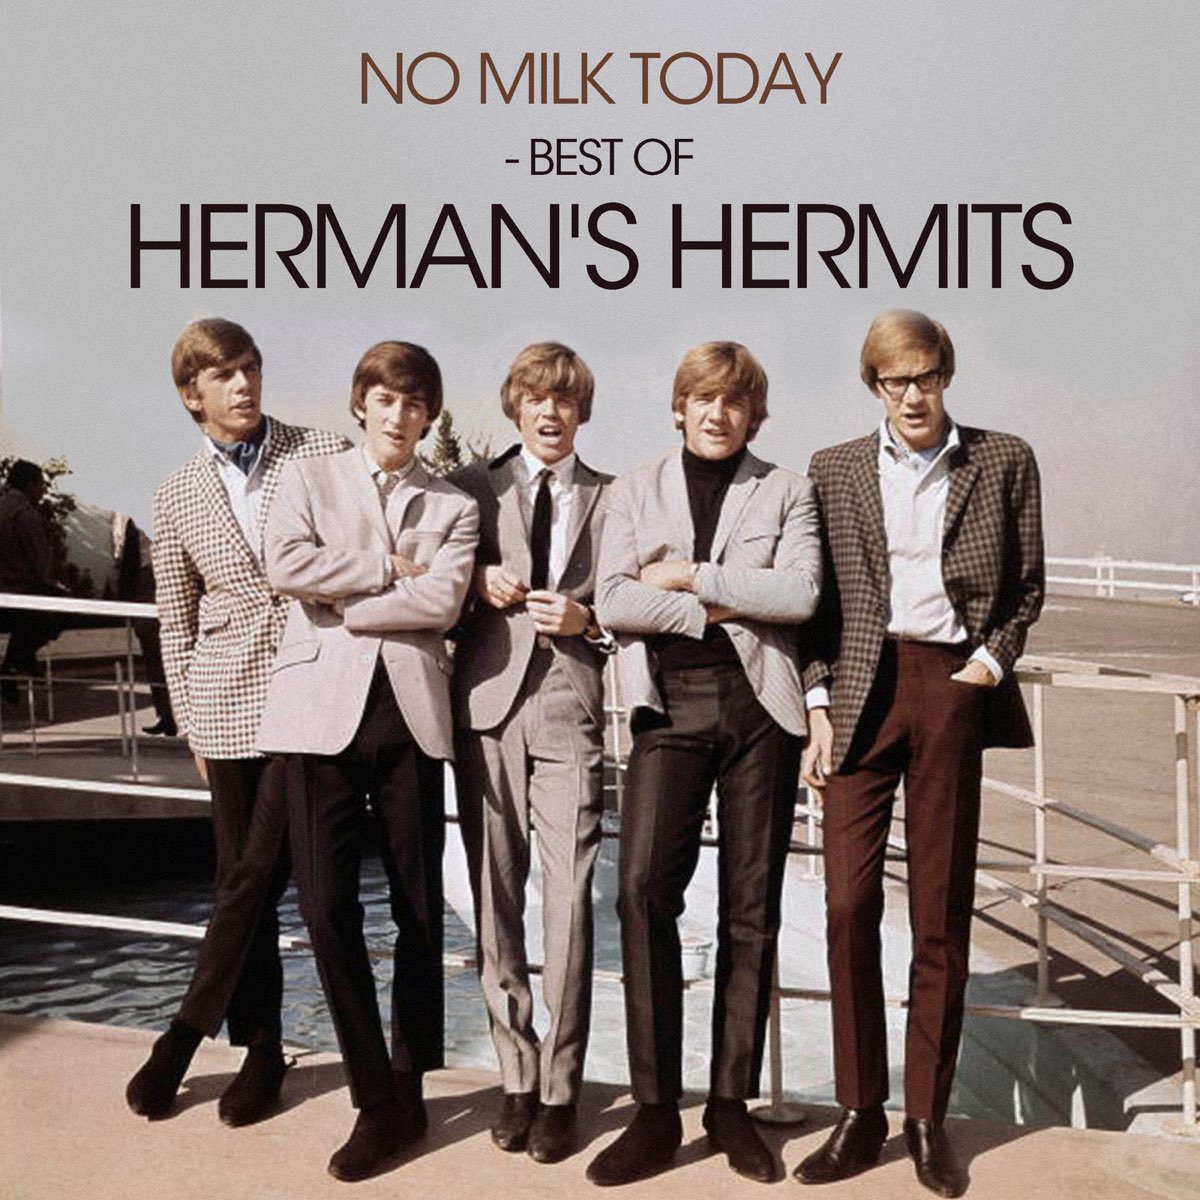 Herman's hermits no milk today text